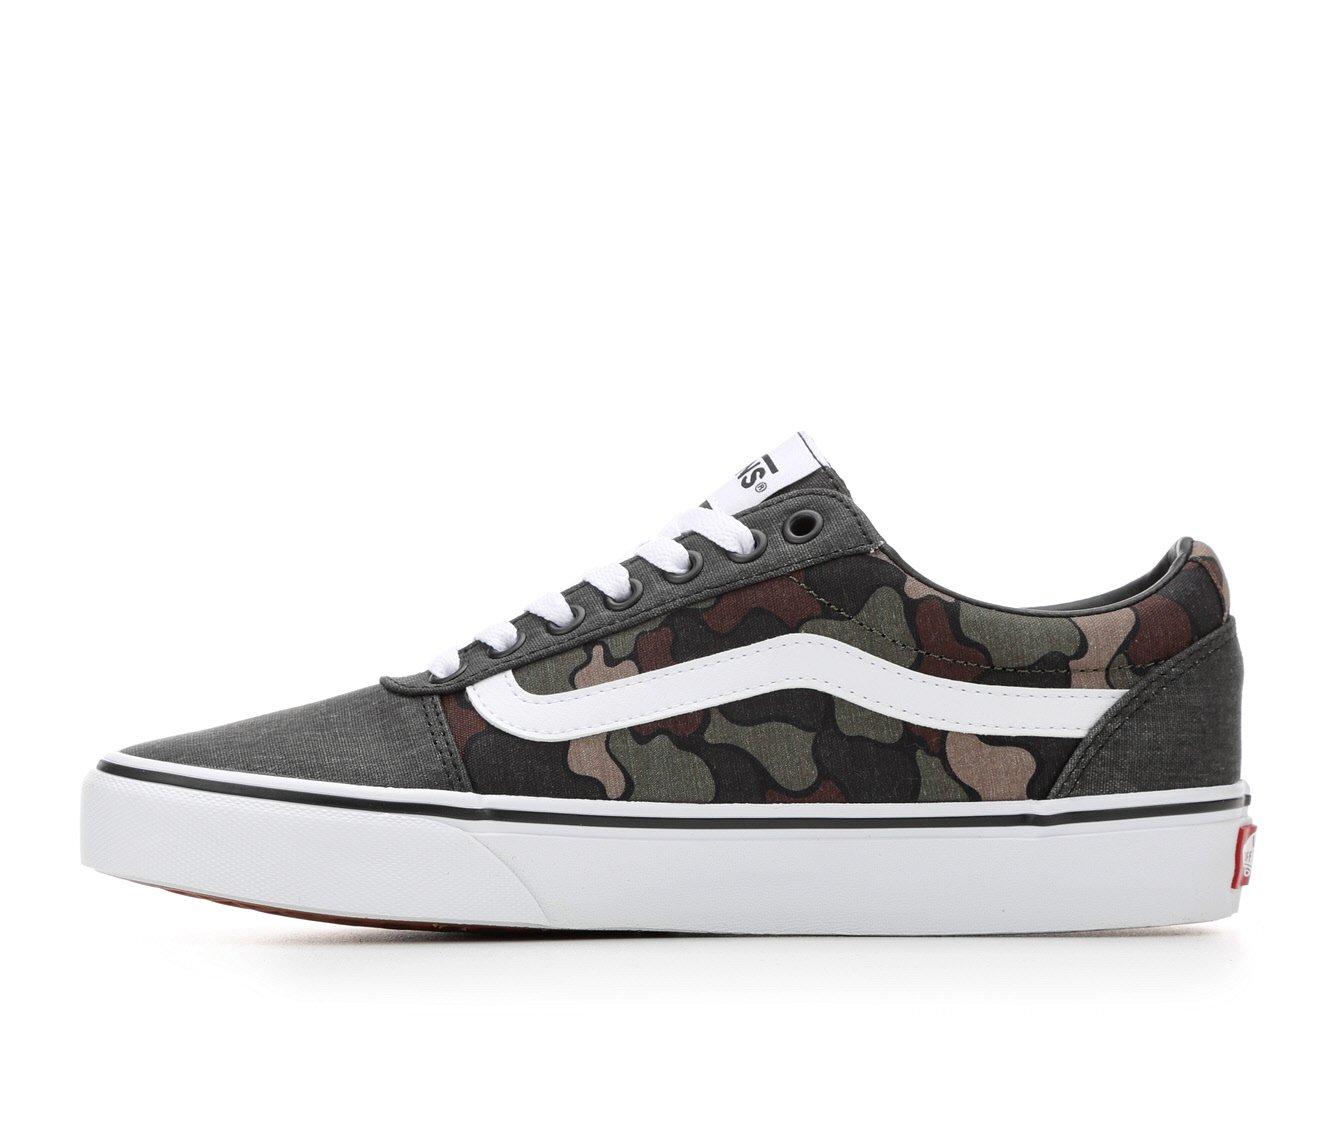 Men's Vans Ward Skate Shoes